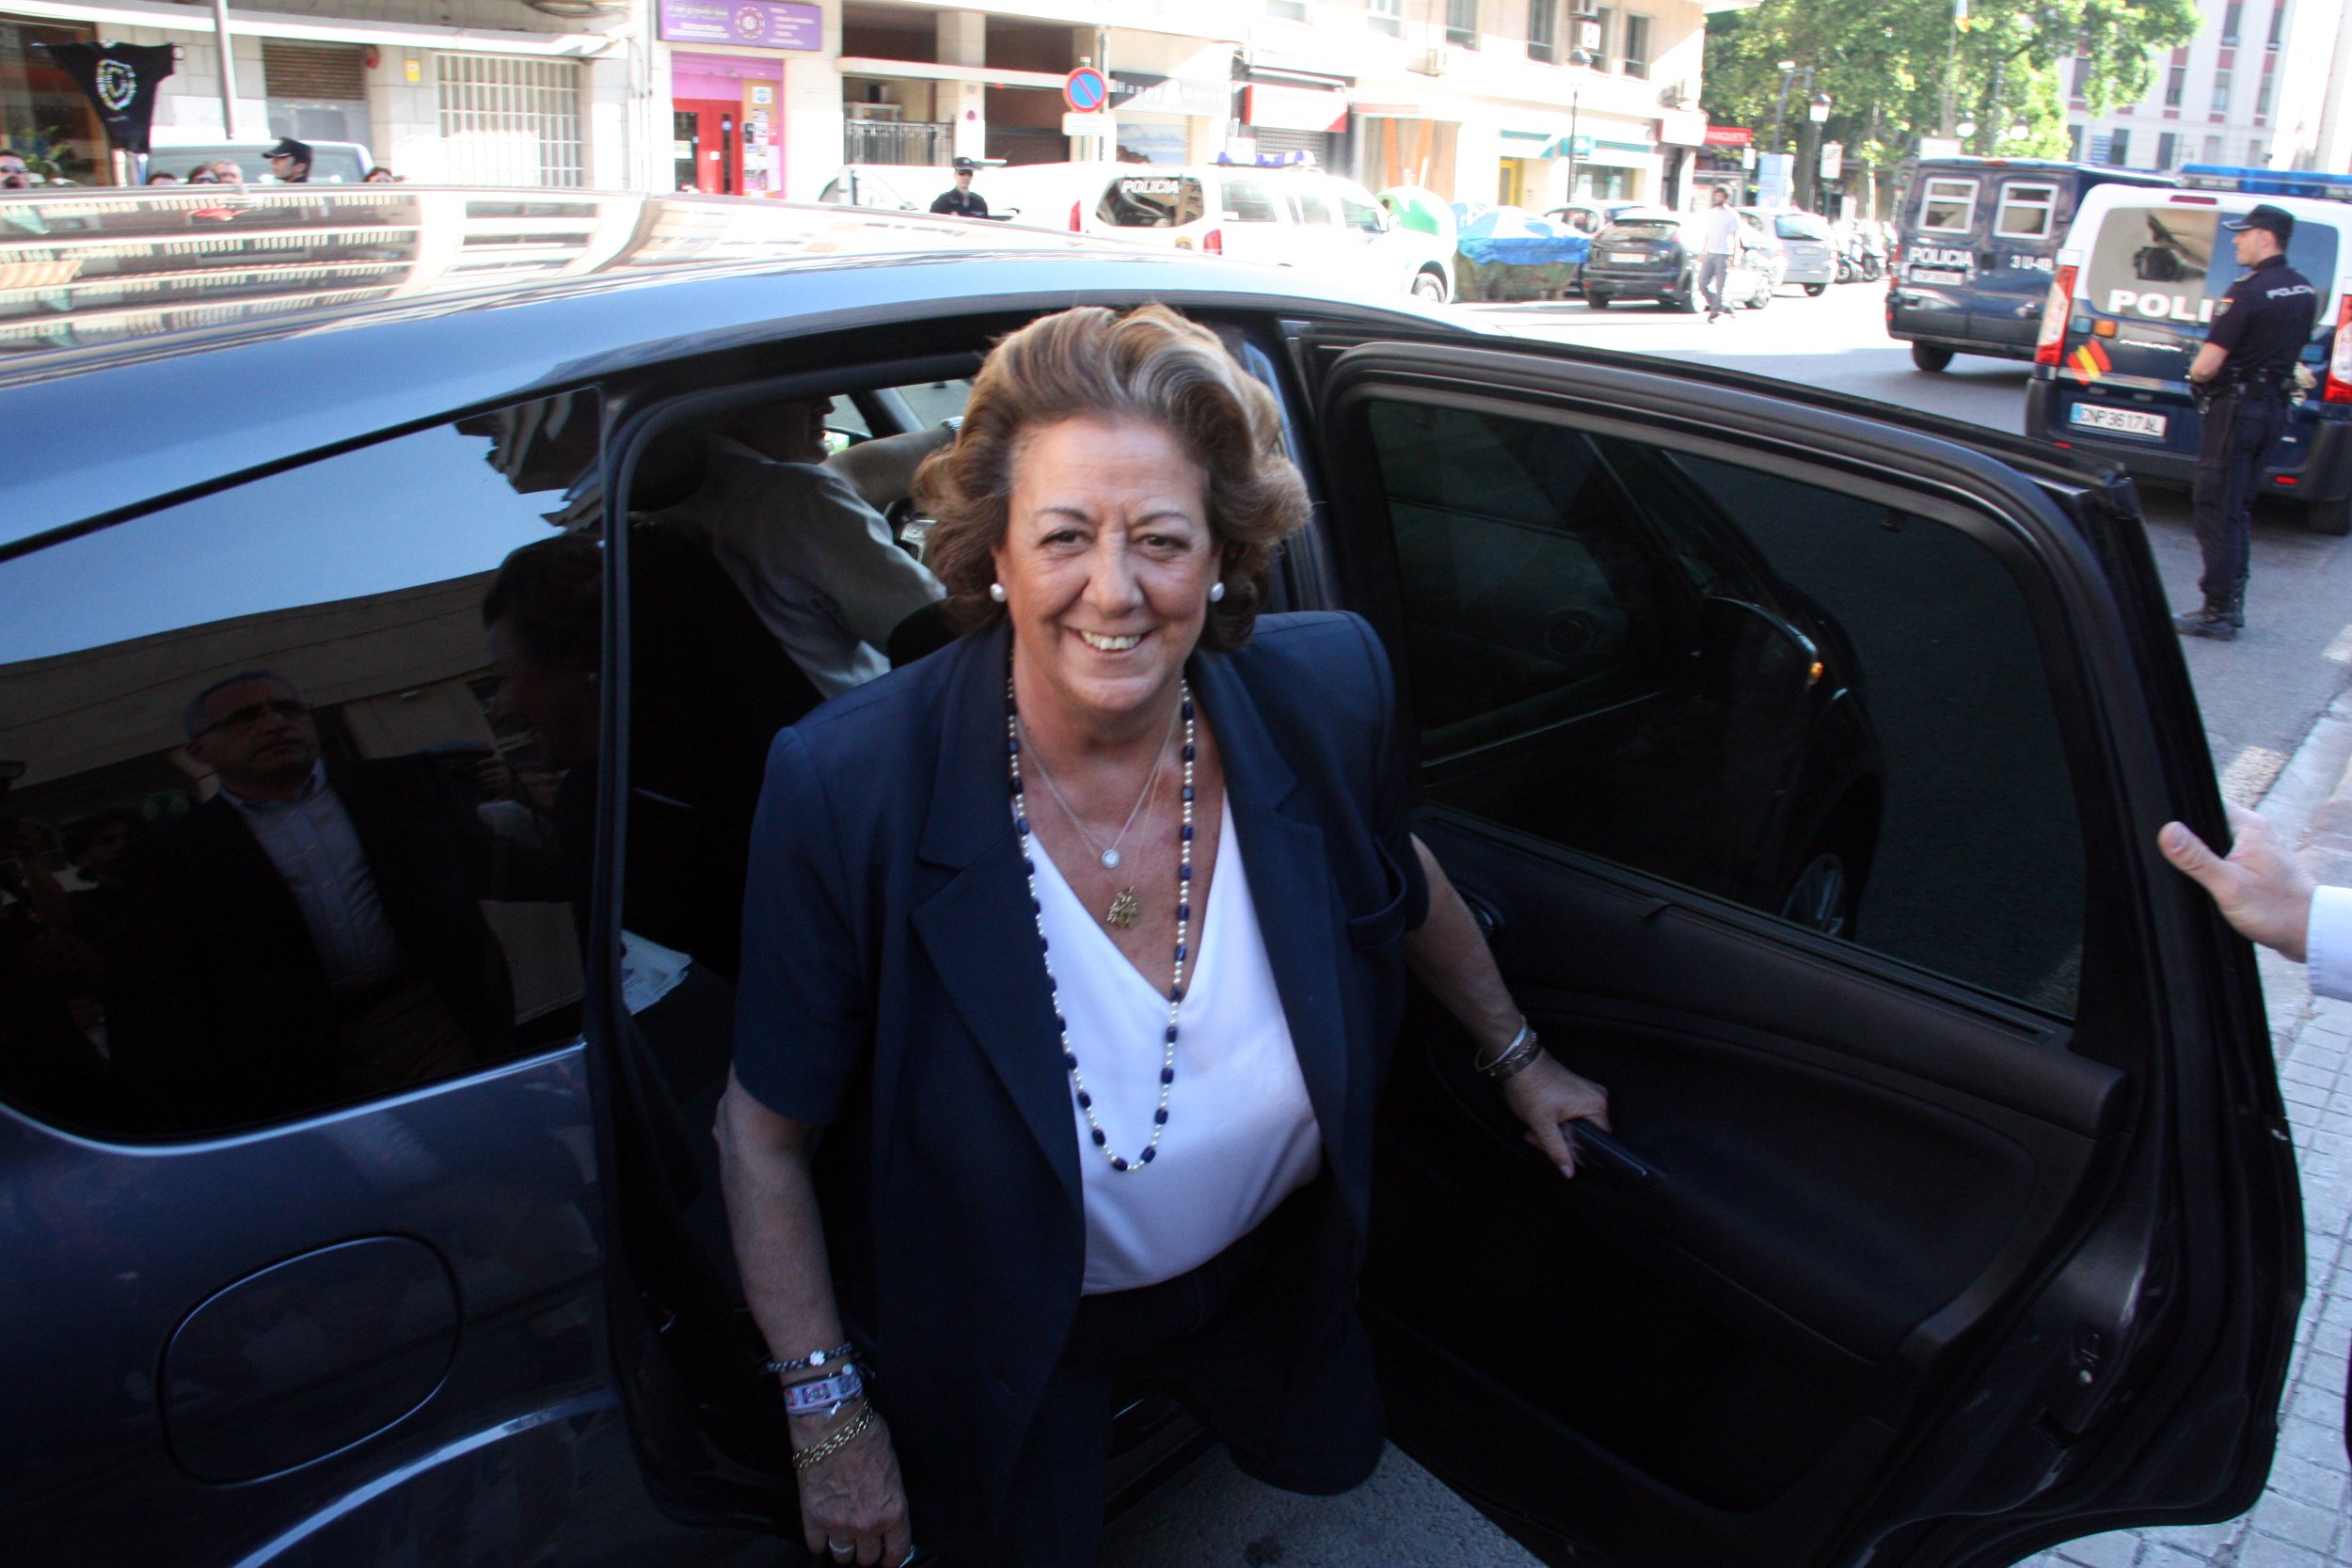 Subastados los dos coches oficiales de Rita Barberà por 28.000 euros